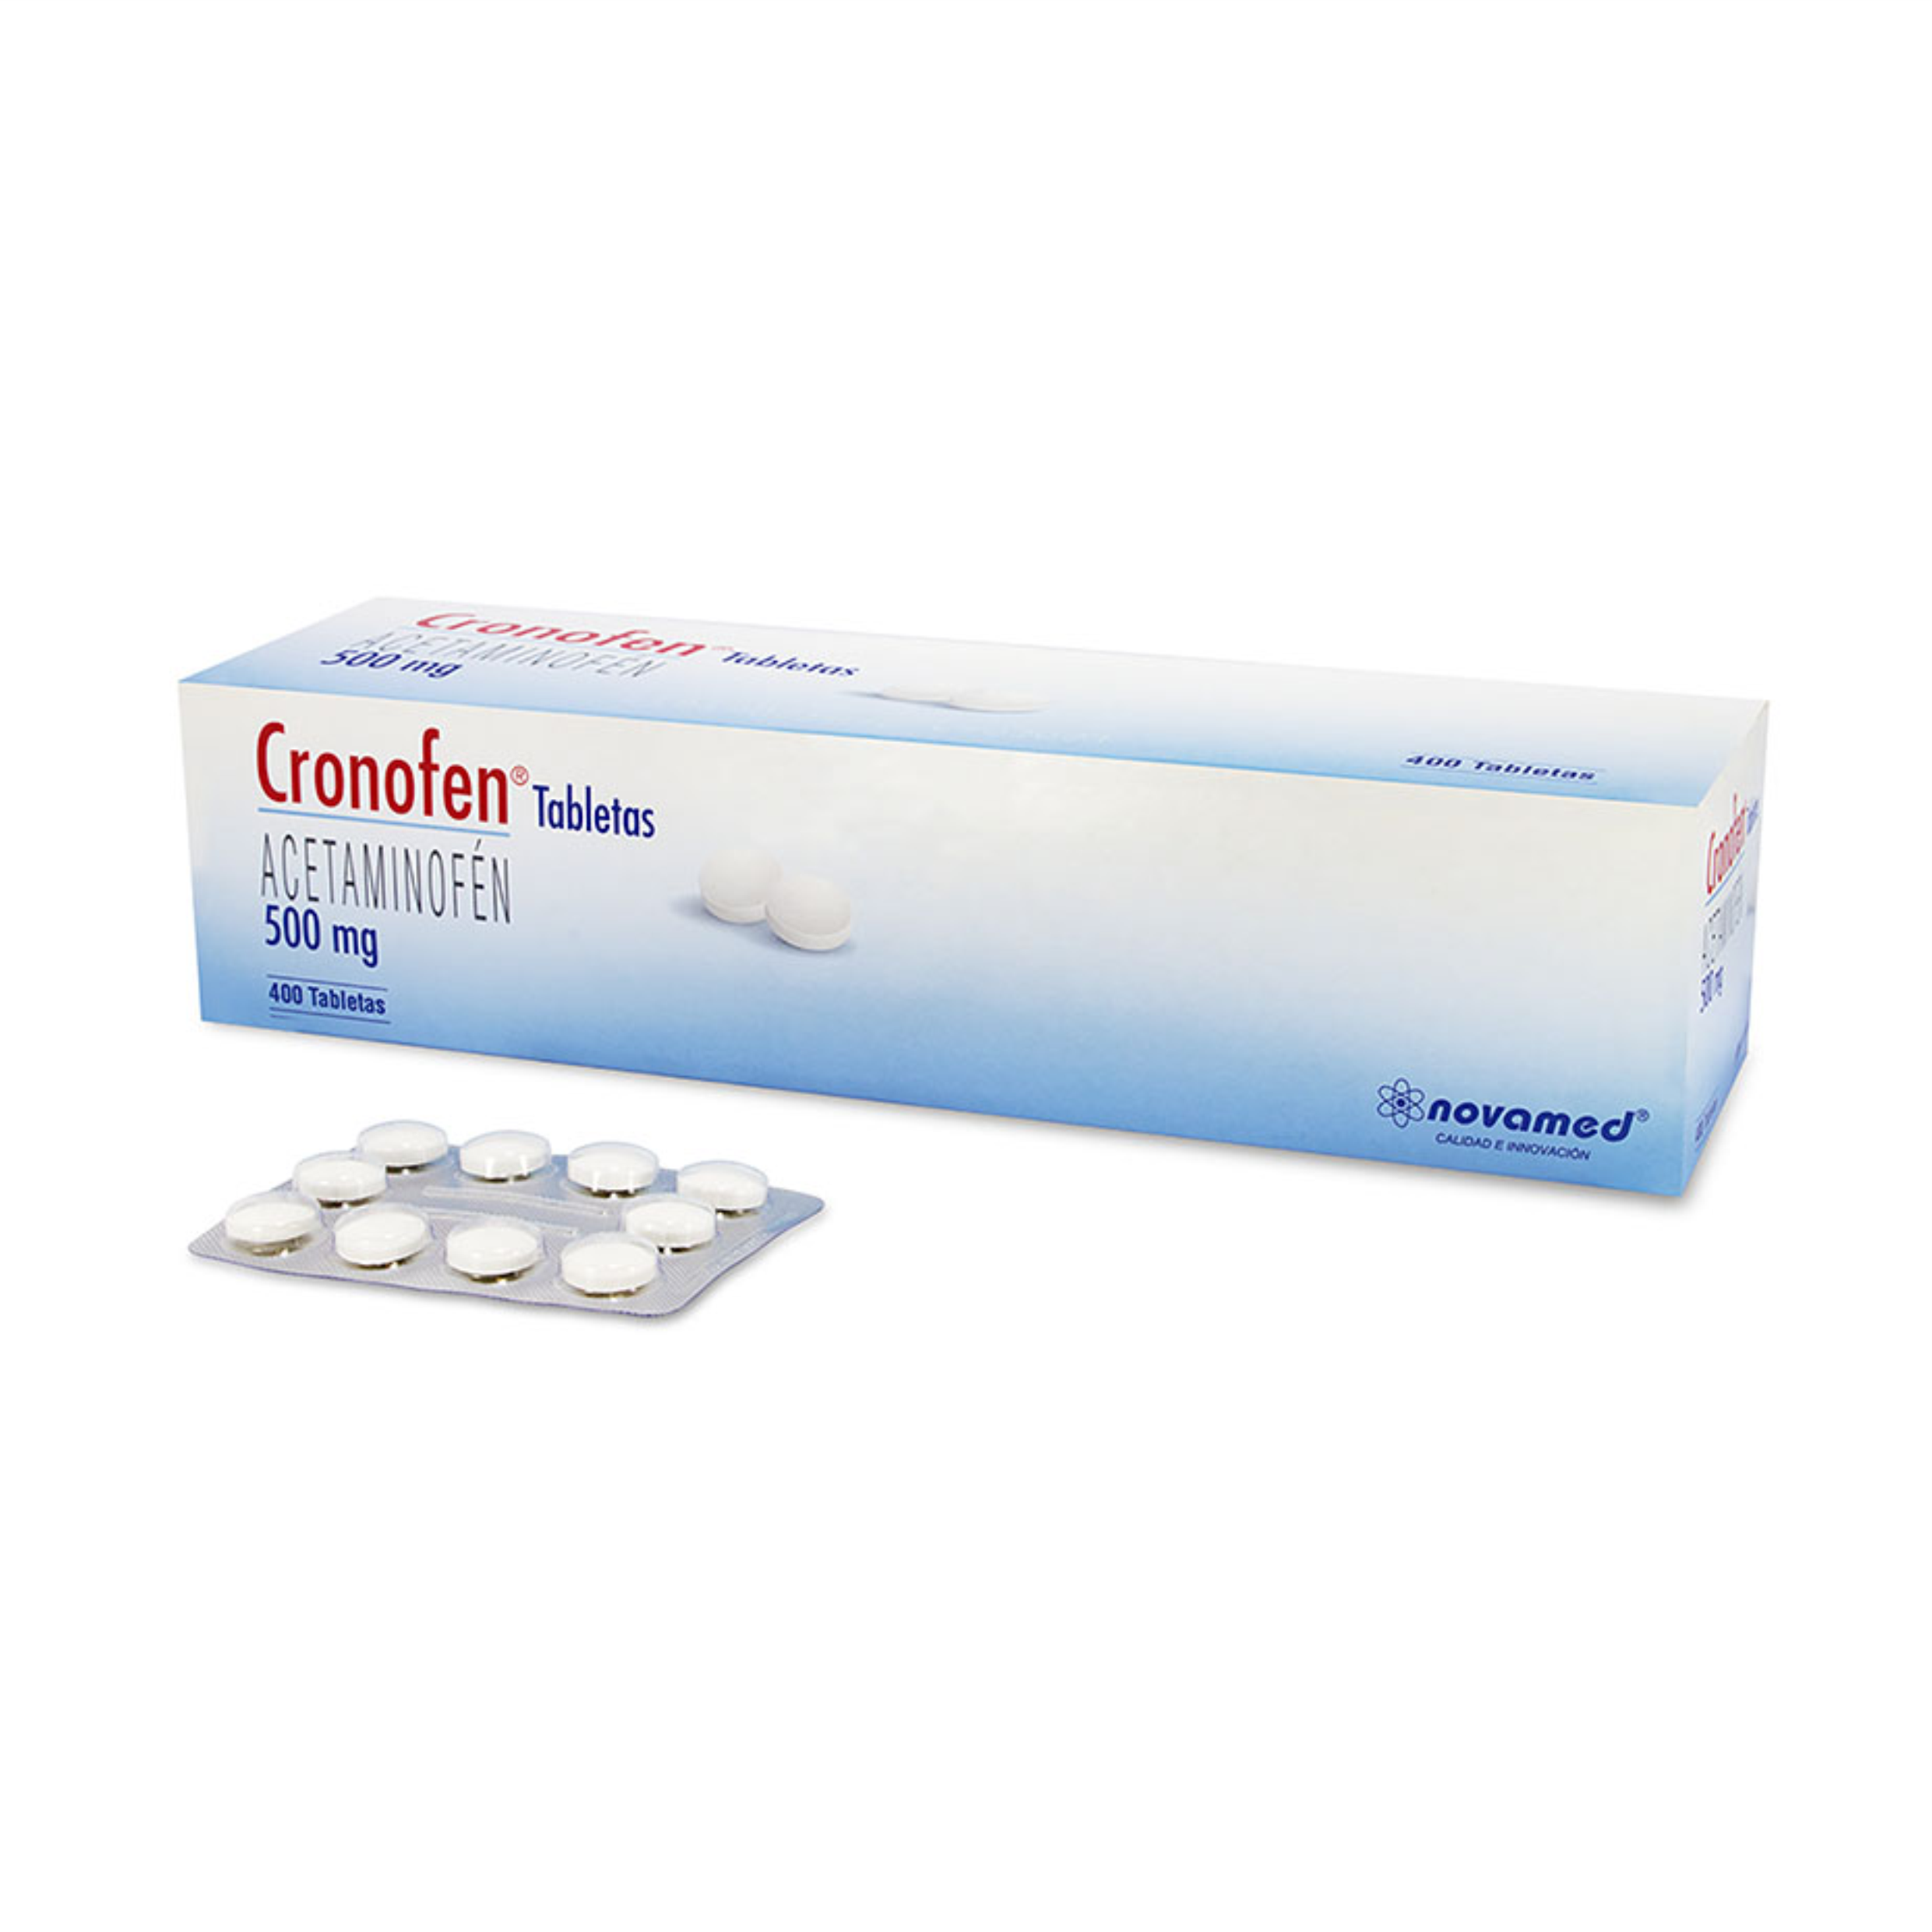 Cronofen 500 mg Tabletas Caja de 400